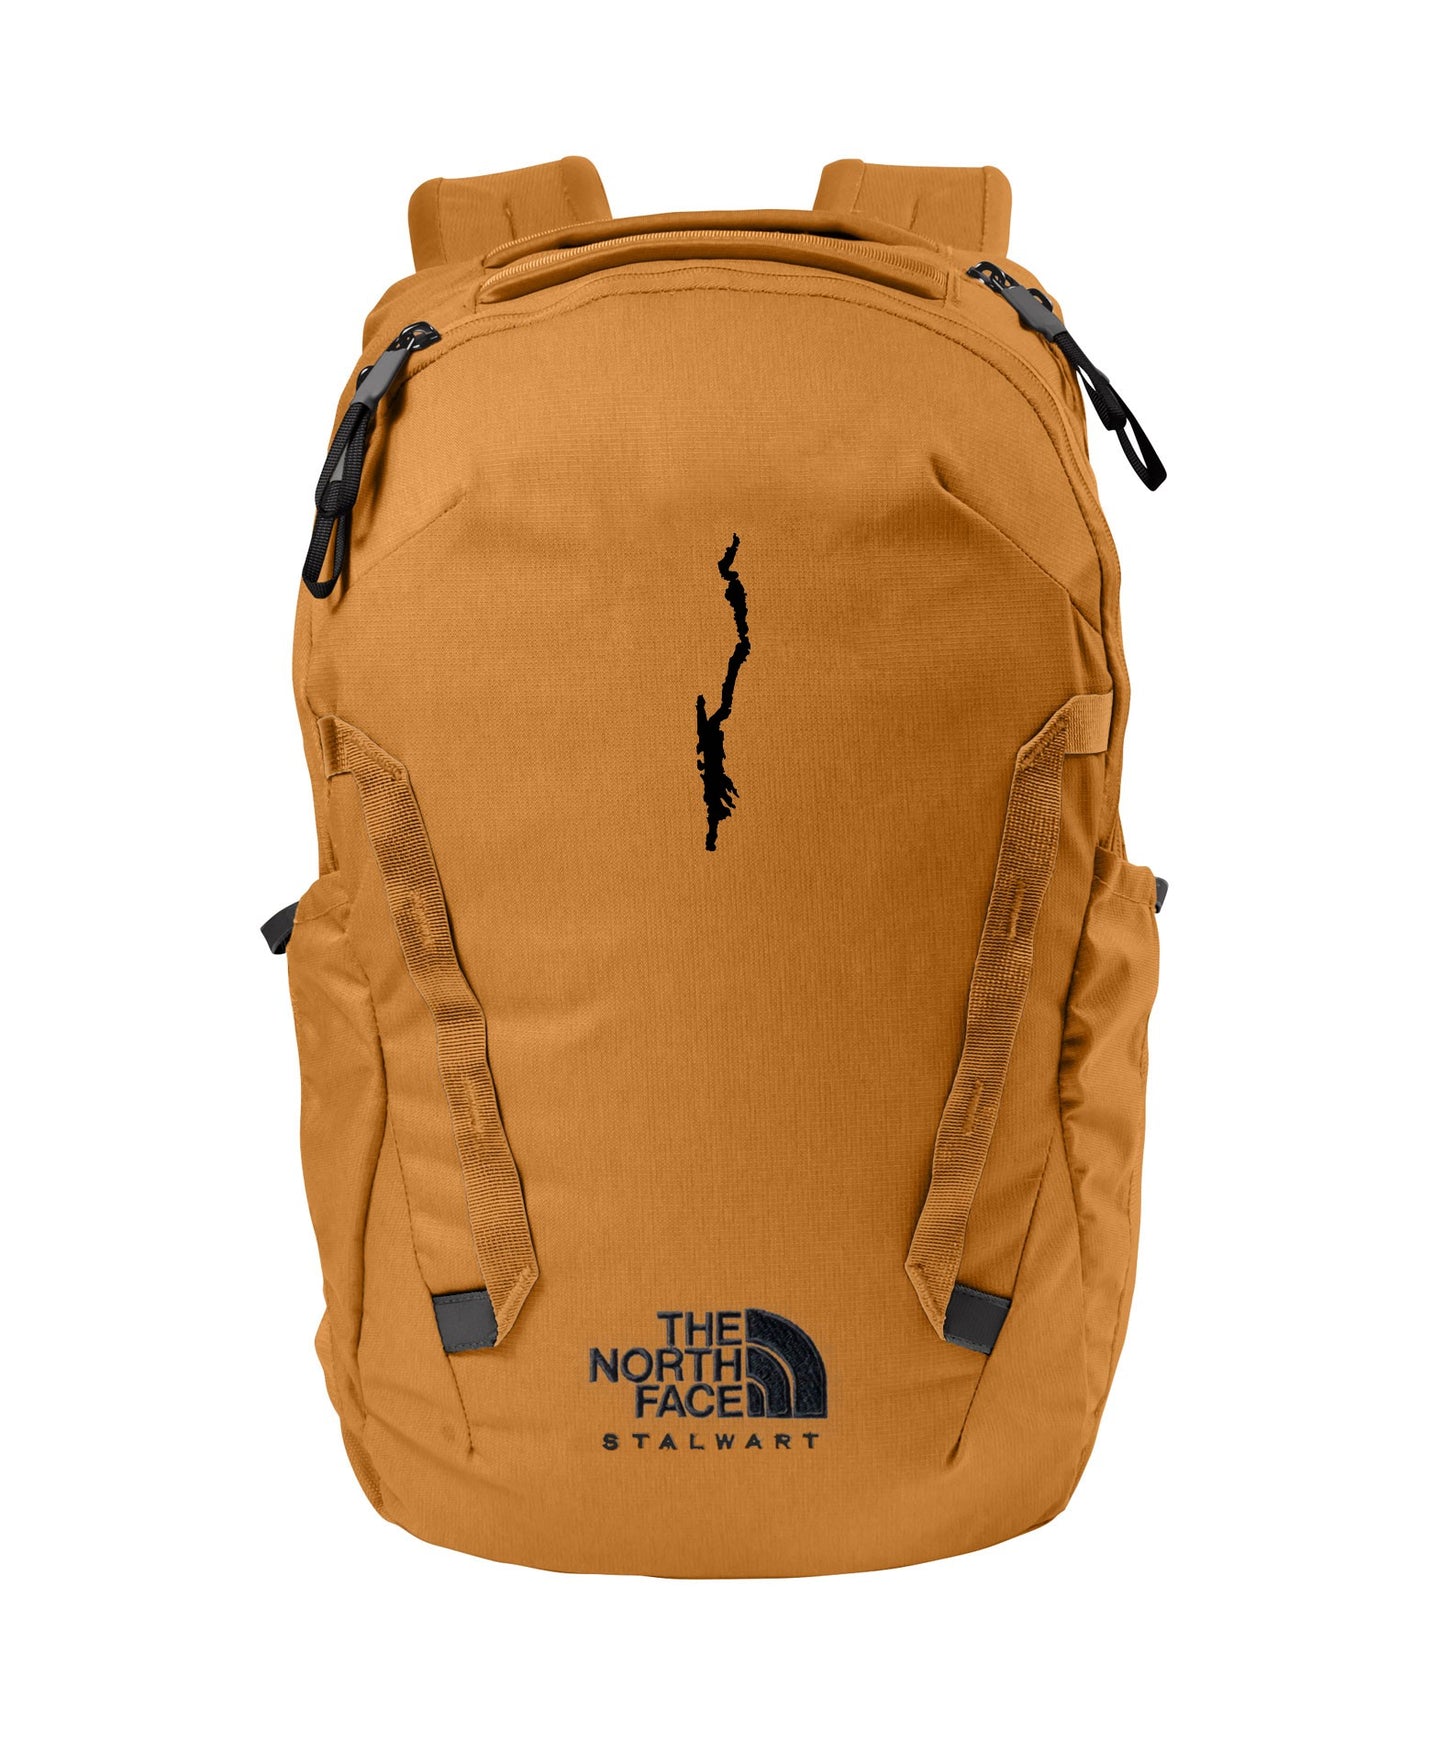 TNF Stalwart Backpack